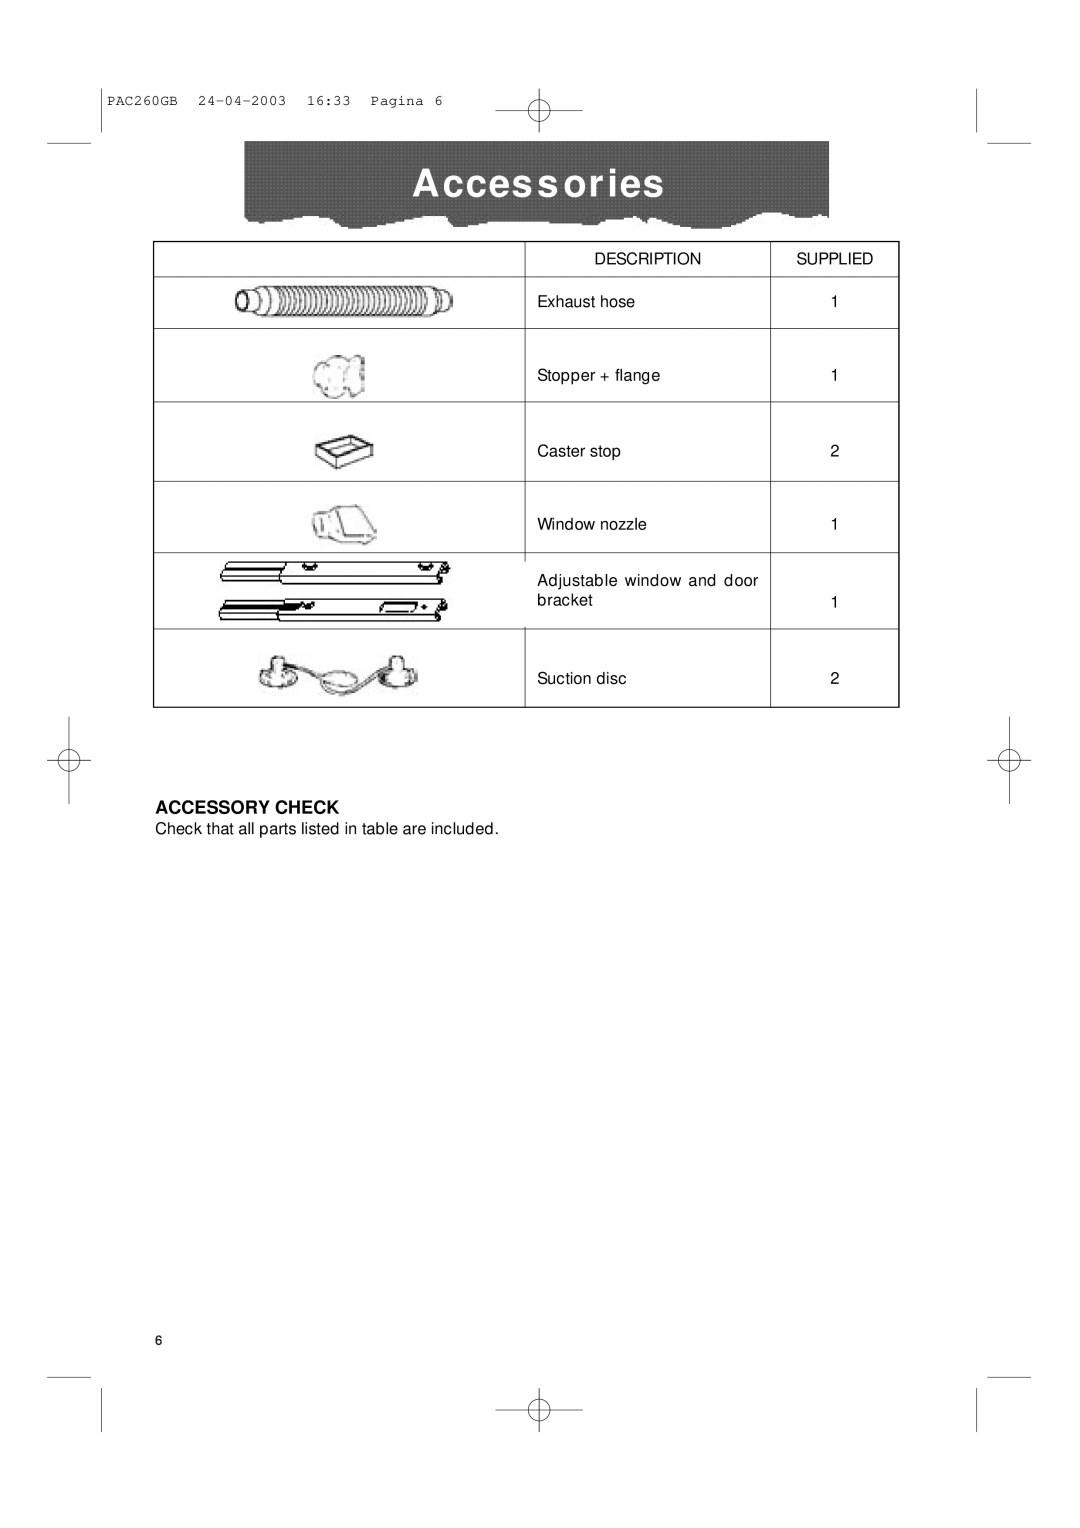 DeLonghi PAC260 manual Accessories, Accessory Check 